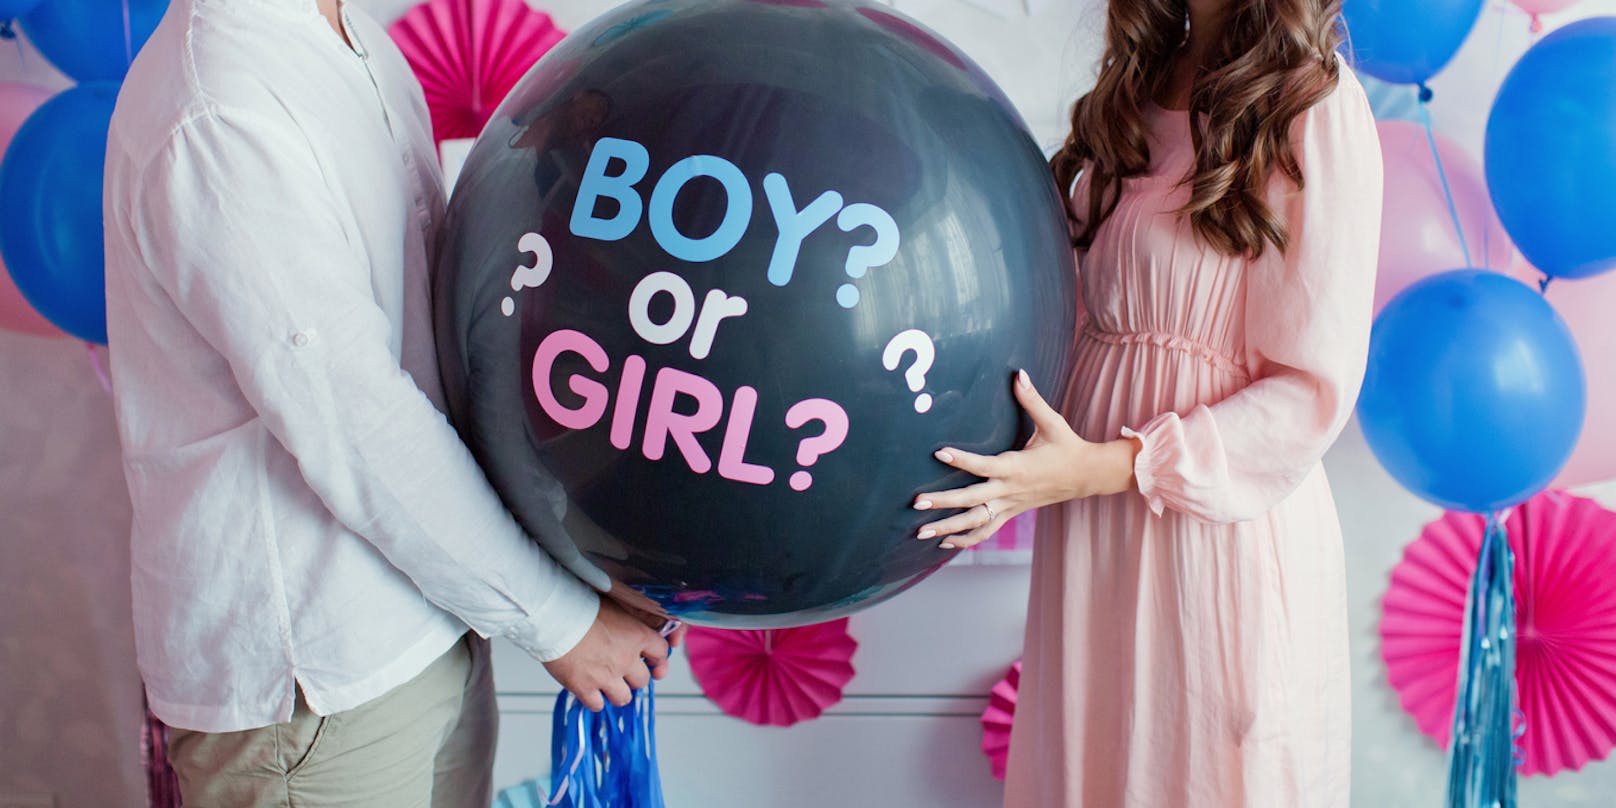 Bei einer "Gender Reveal Party" erfahren Paare erstmals das Geschlecht ihres Babys. Meist wird dabei ein mit blauen oder rosa Konfetti gefüllter Ballon zerstochen.